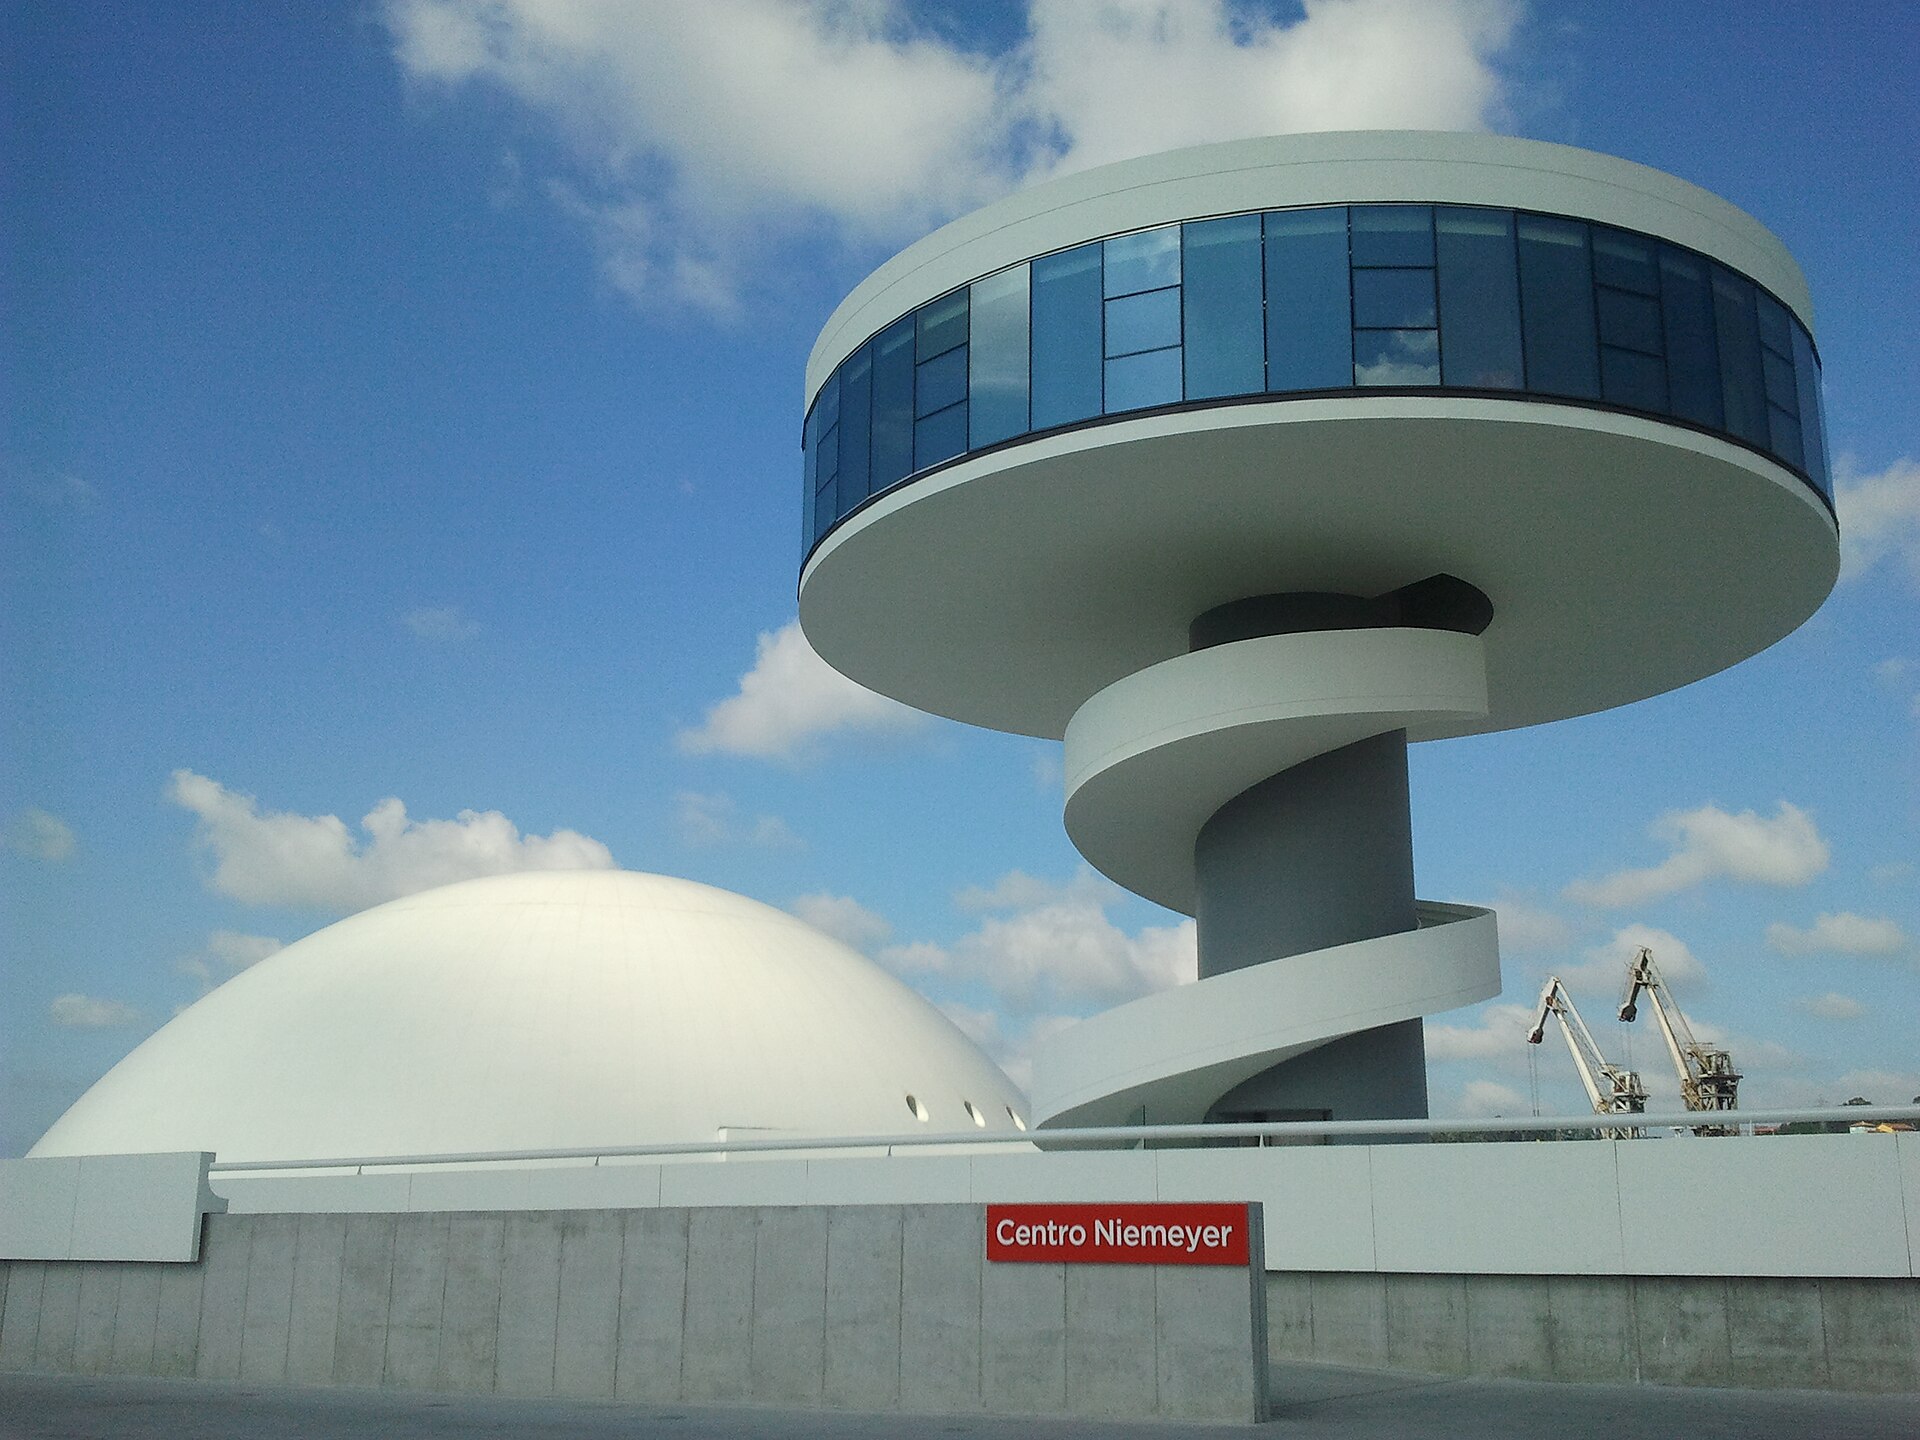 Obras de arquitectura moderna en españa centro niemeyer avilés que ver en españa 